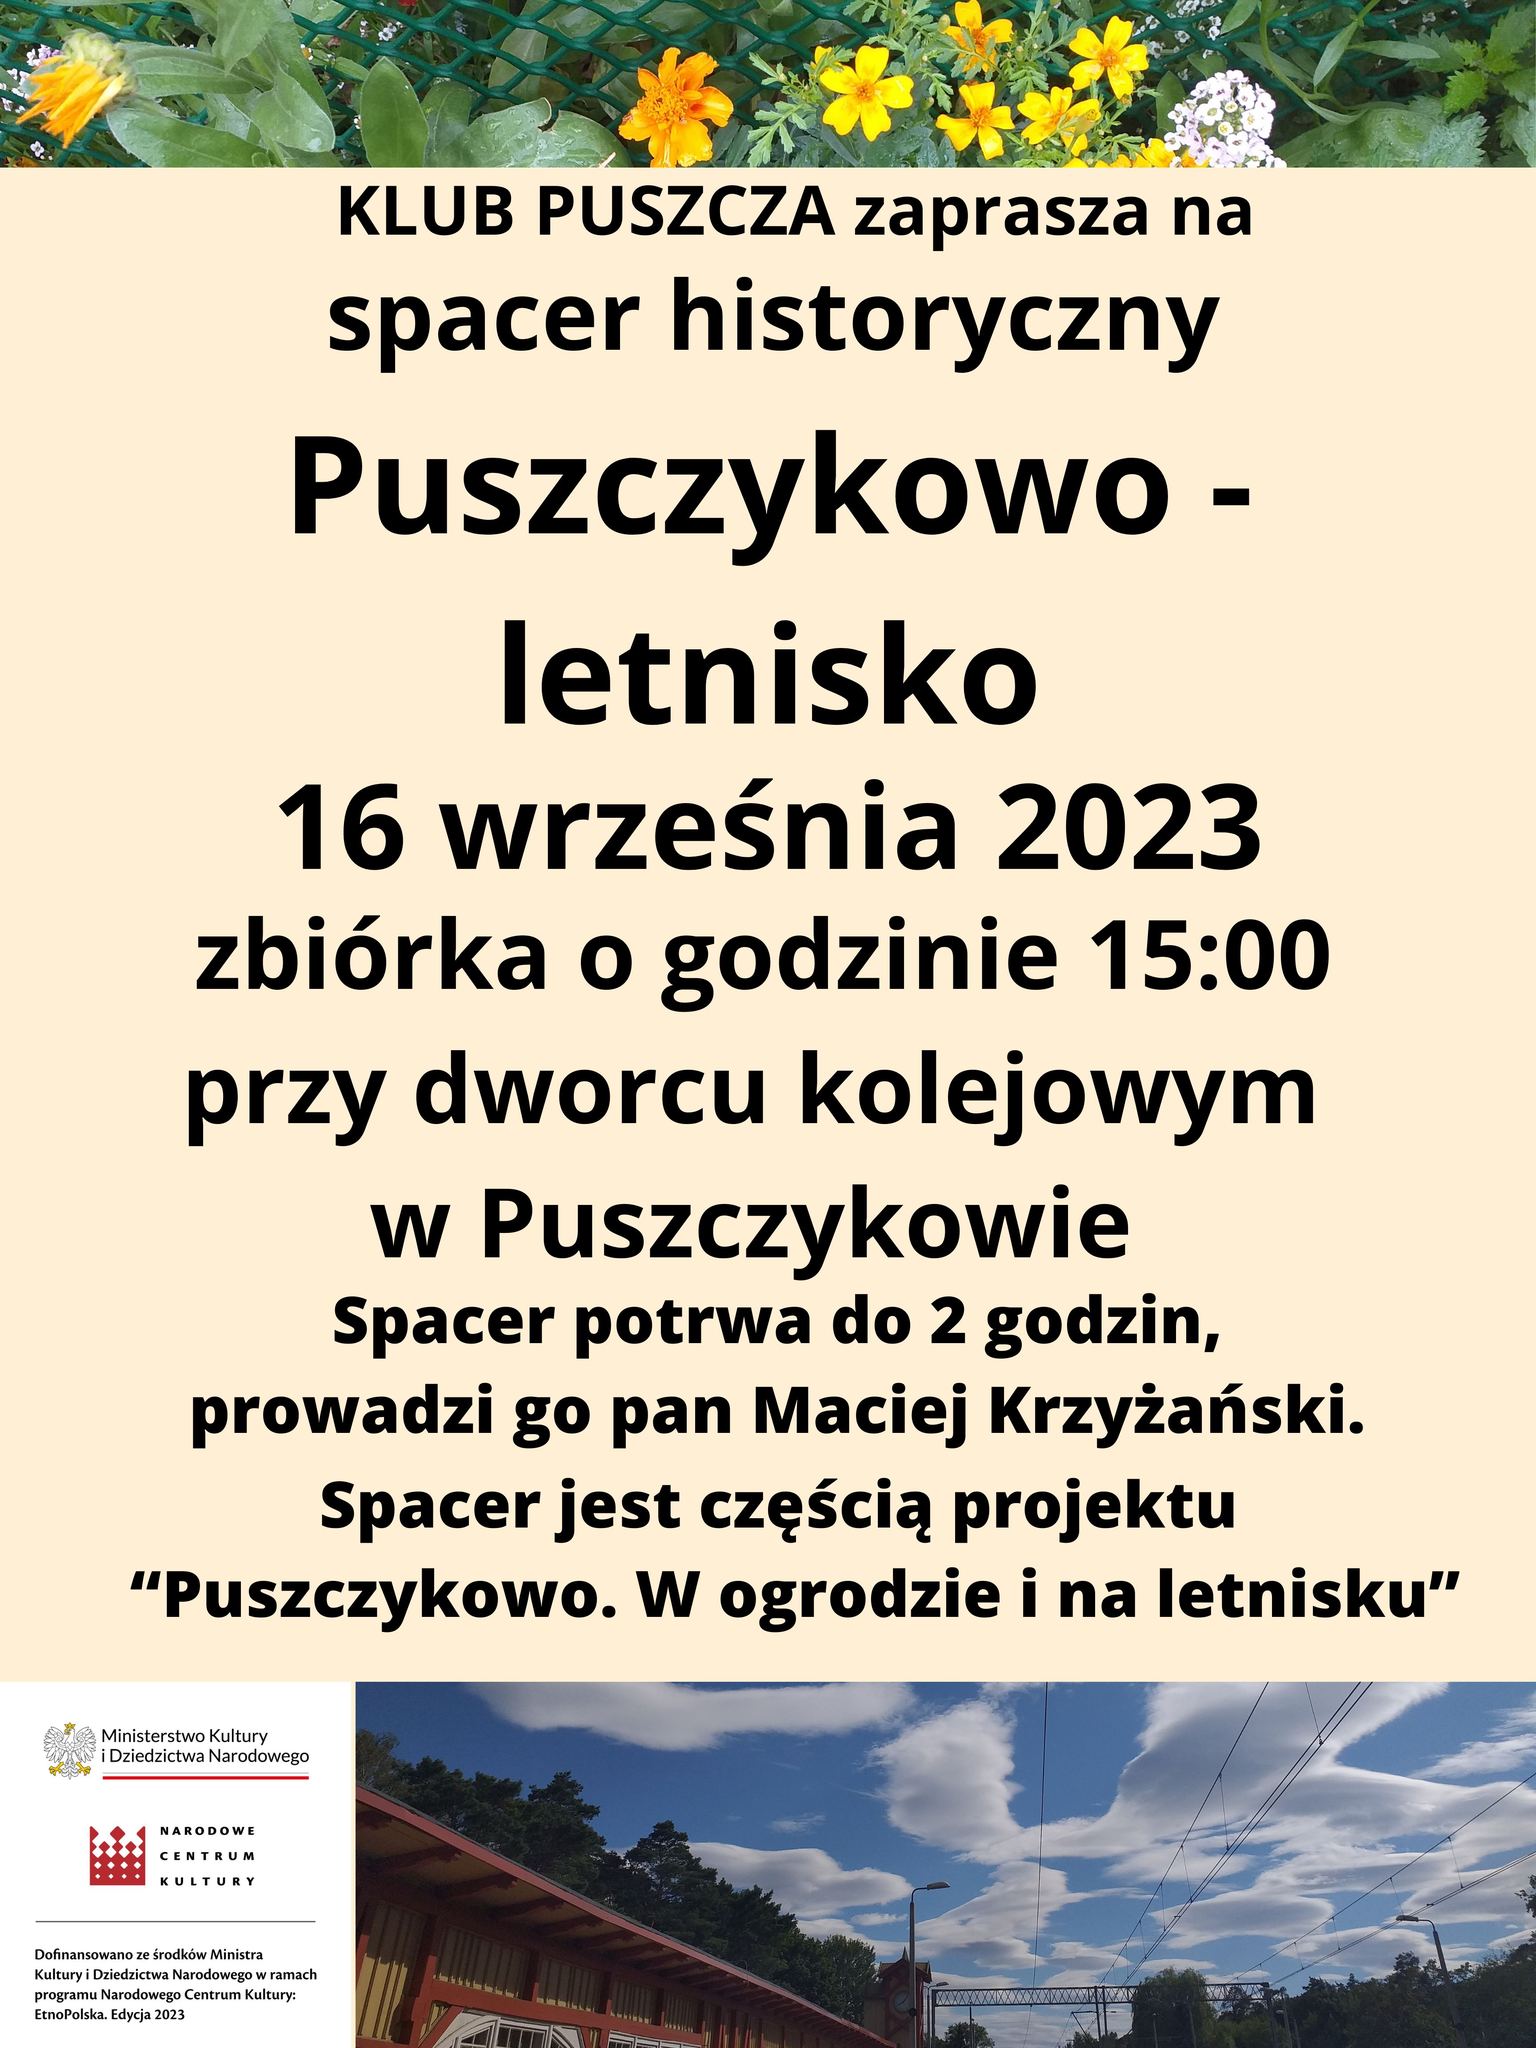 Klub Puszcza zaprasza na spacer historyczny po Puszczykowie.